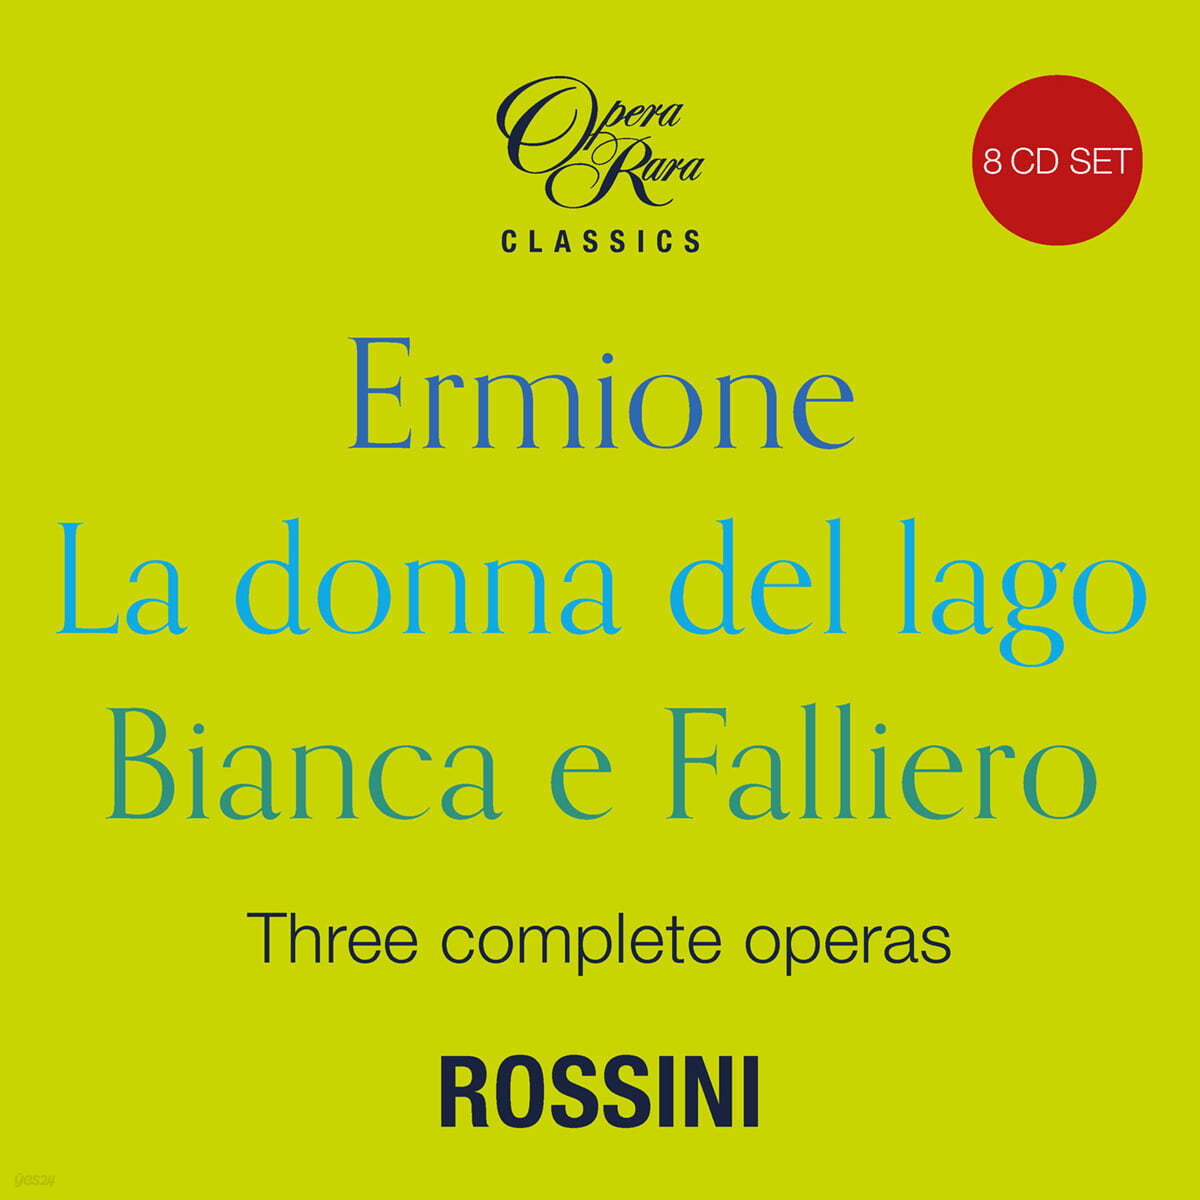 1819년의 로시니 - 오페라 '에르미오네', '호수의 여인', '비안카와 팔리에로' (Rossini: Three Complete Operas - Ermione, La donna del lago, Bianca e Falliero) 